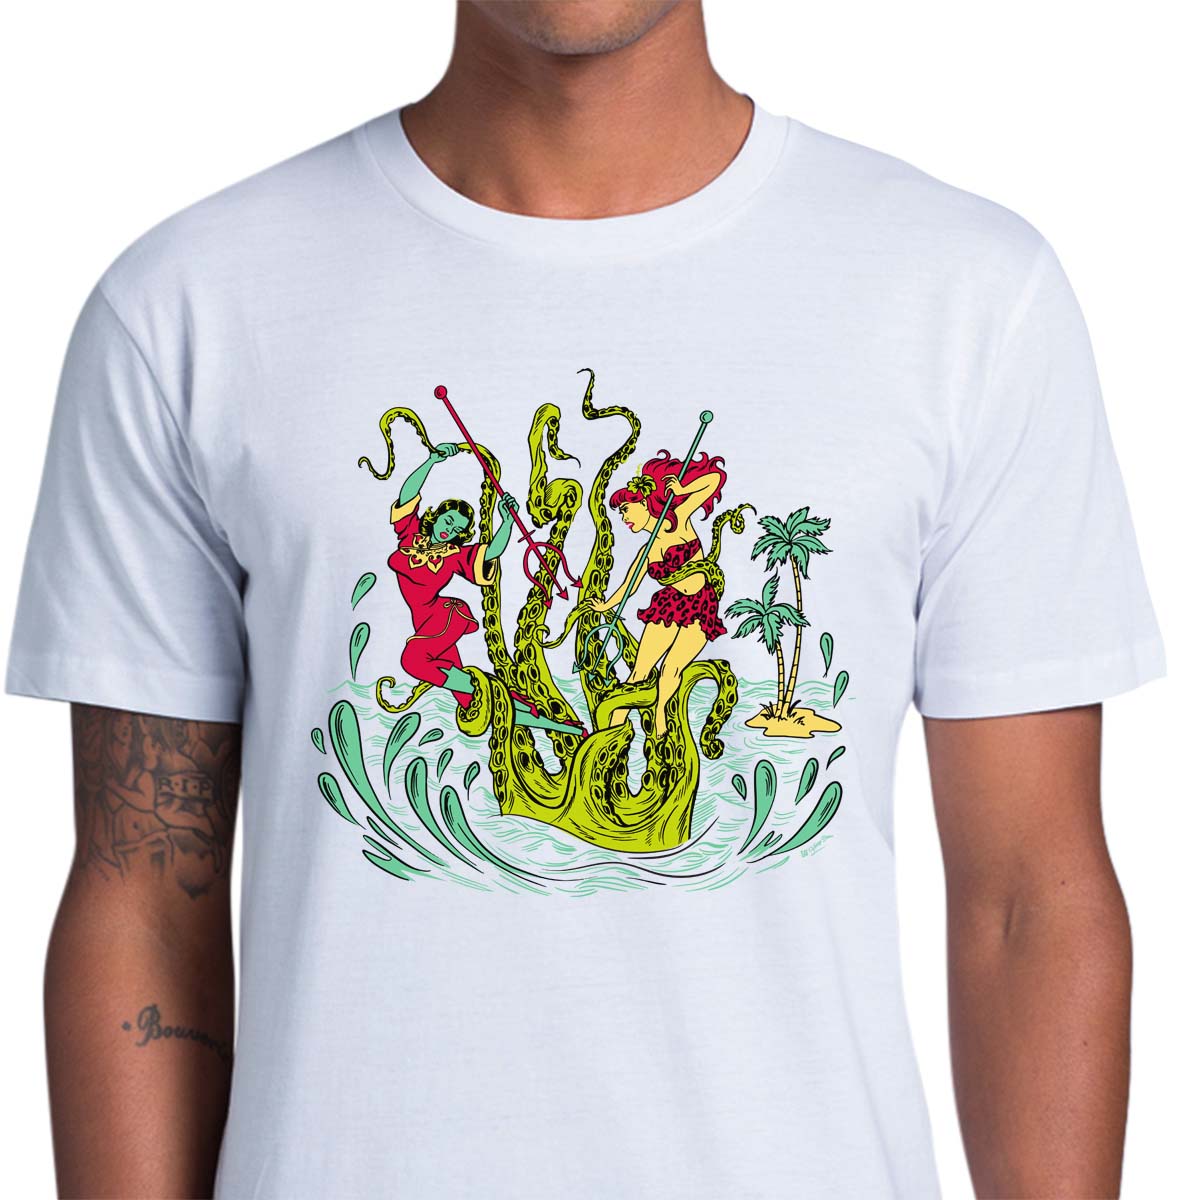 Kraken Sea Monster Vintage Release the Kraken Giant Kraken T-Shirt